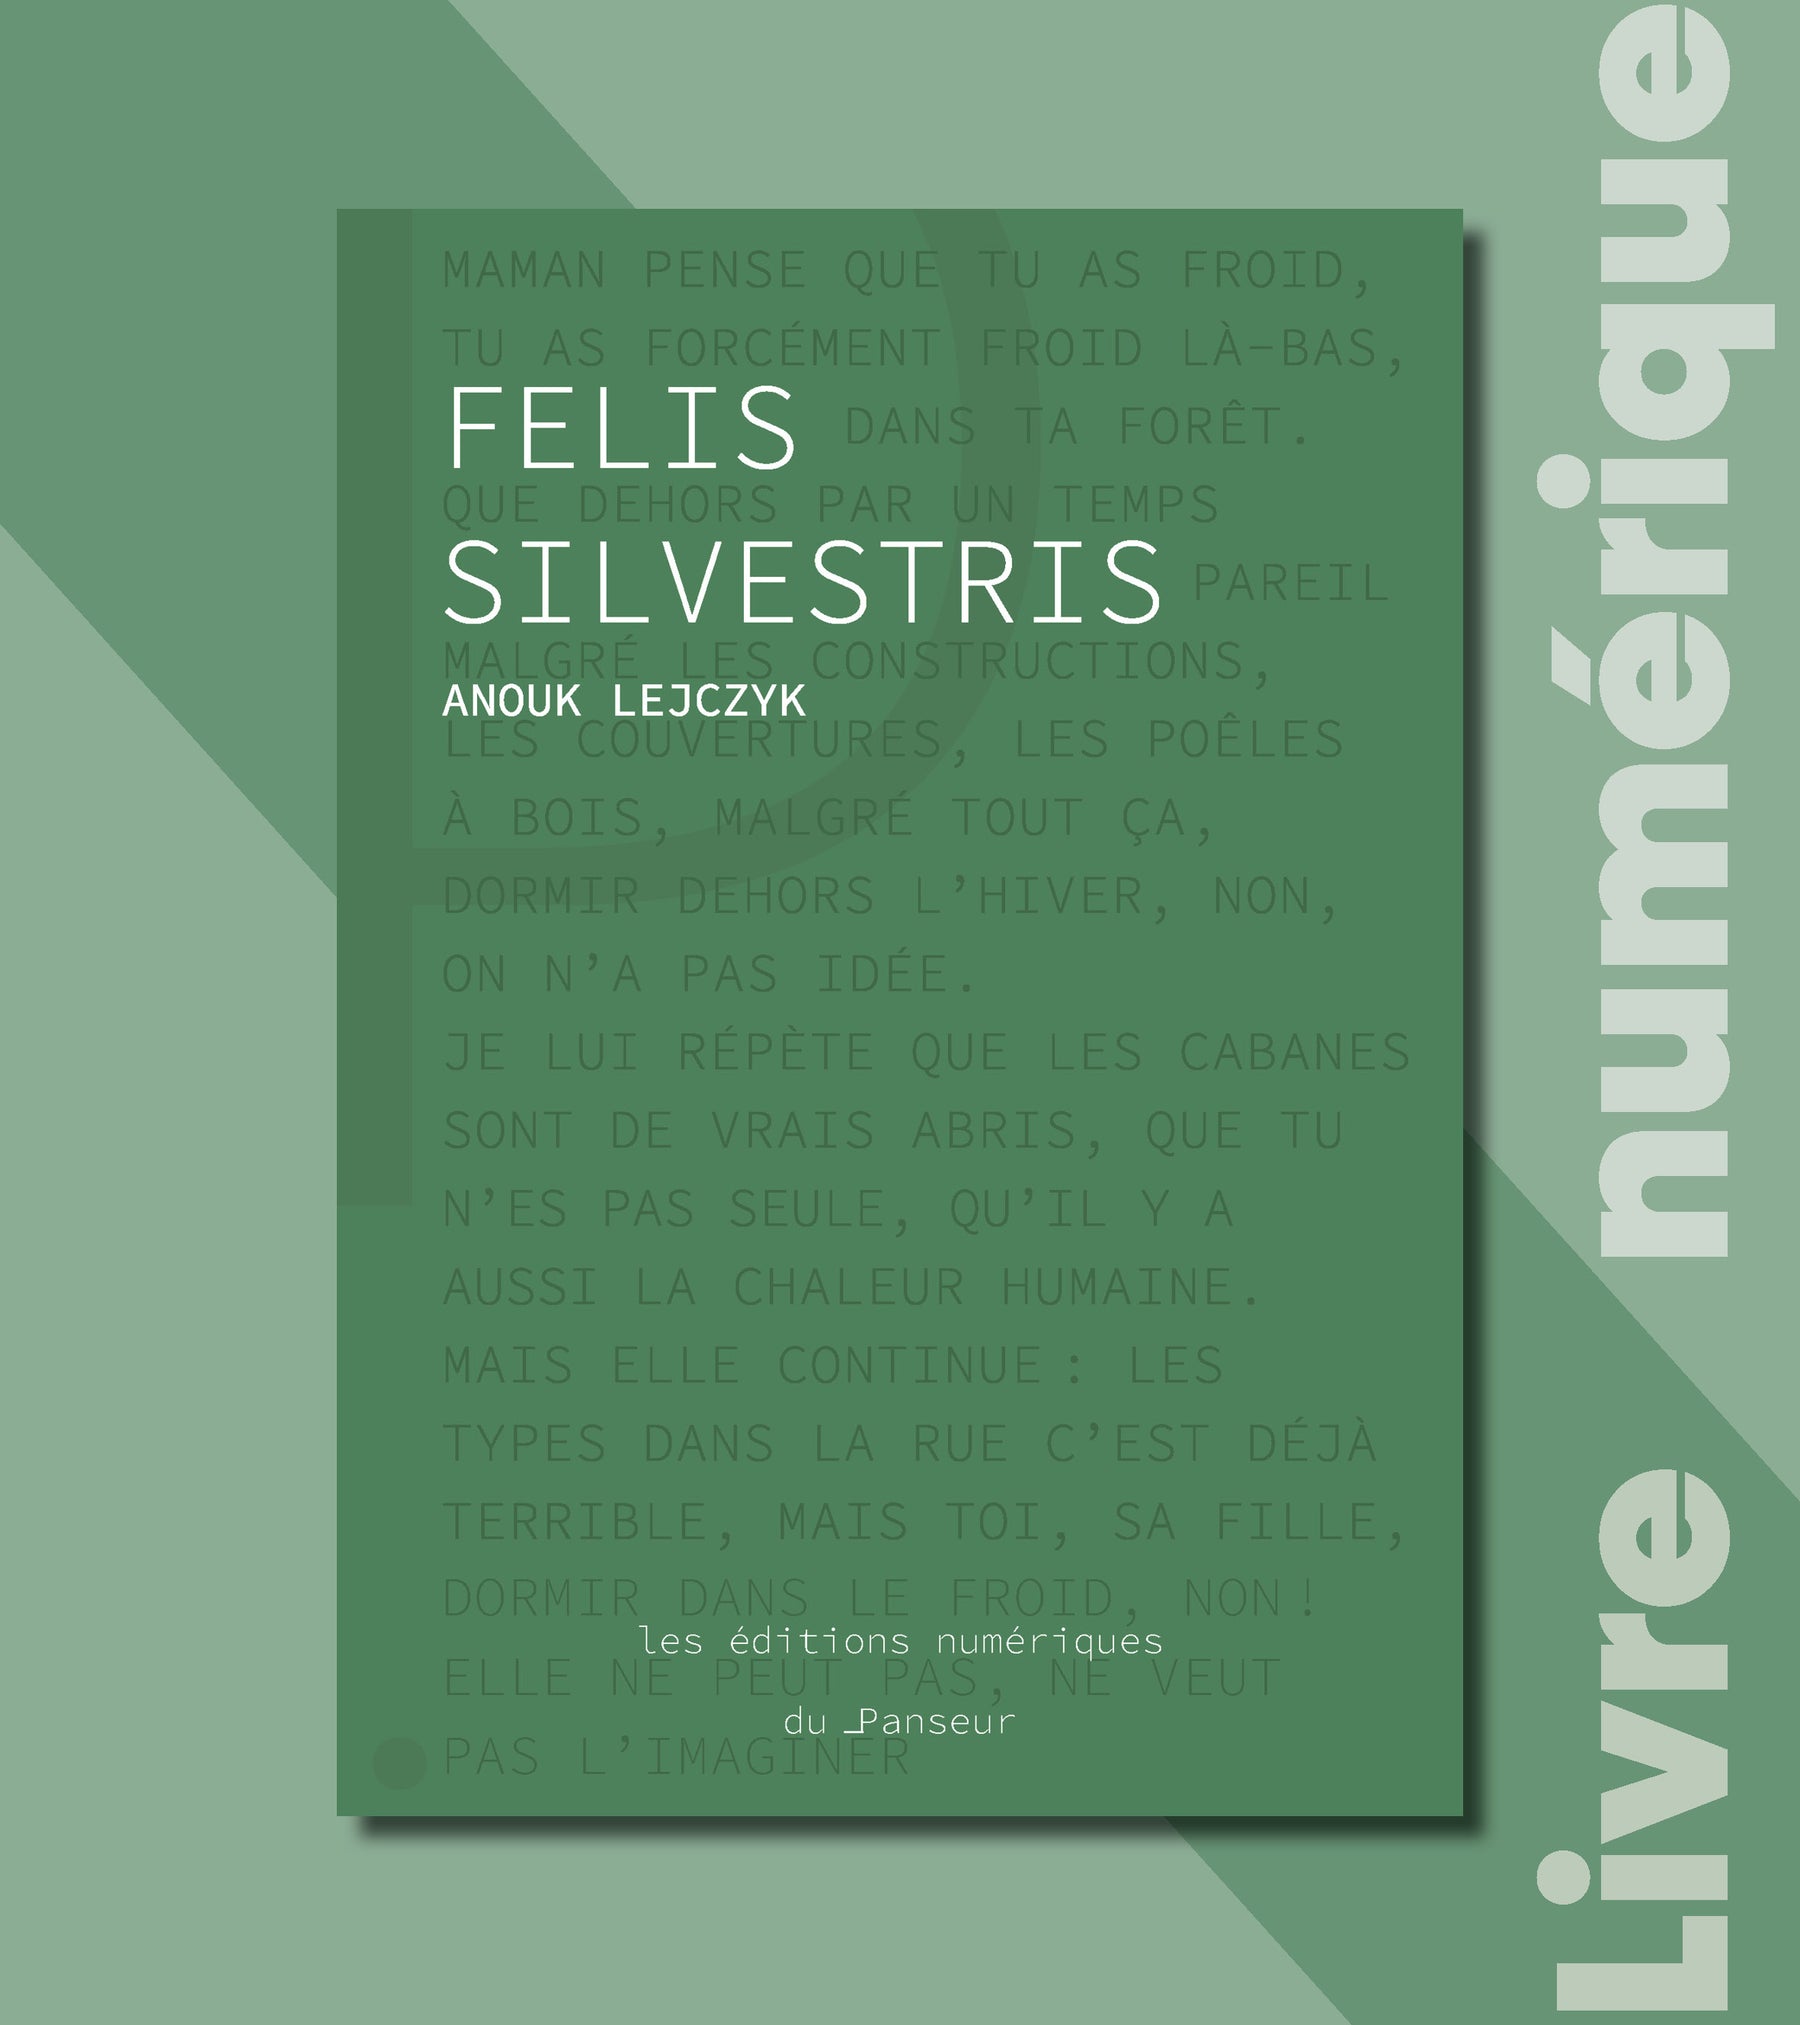 #8 - Felis Silvestris